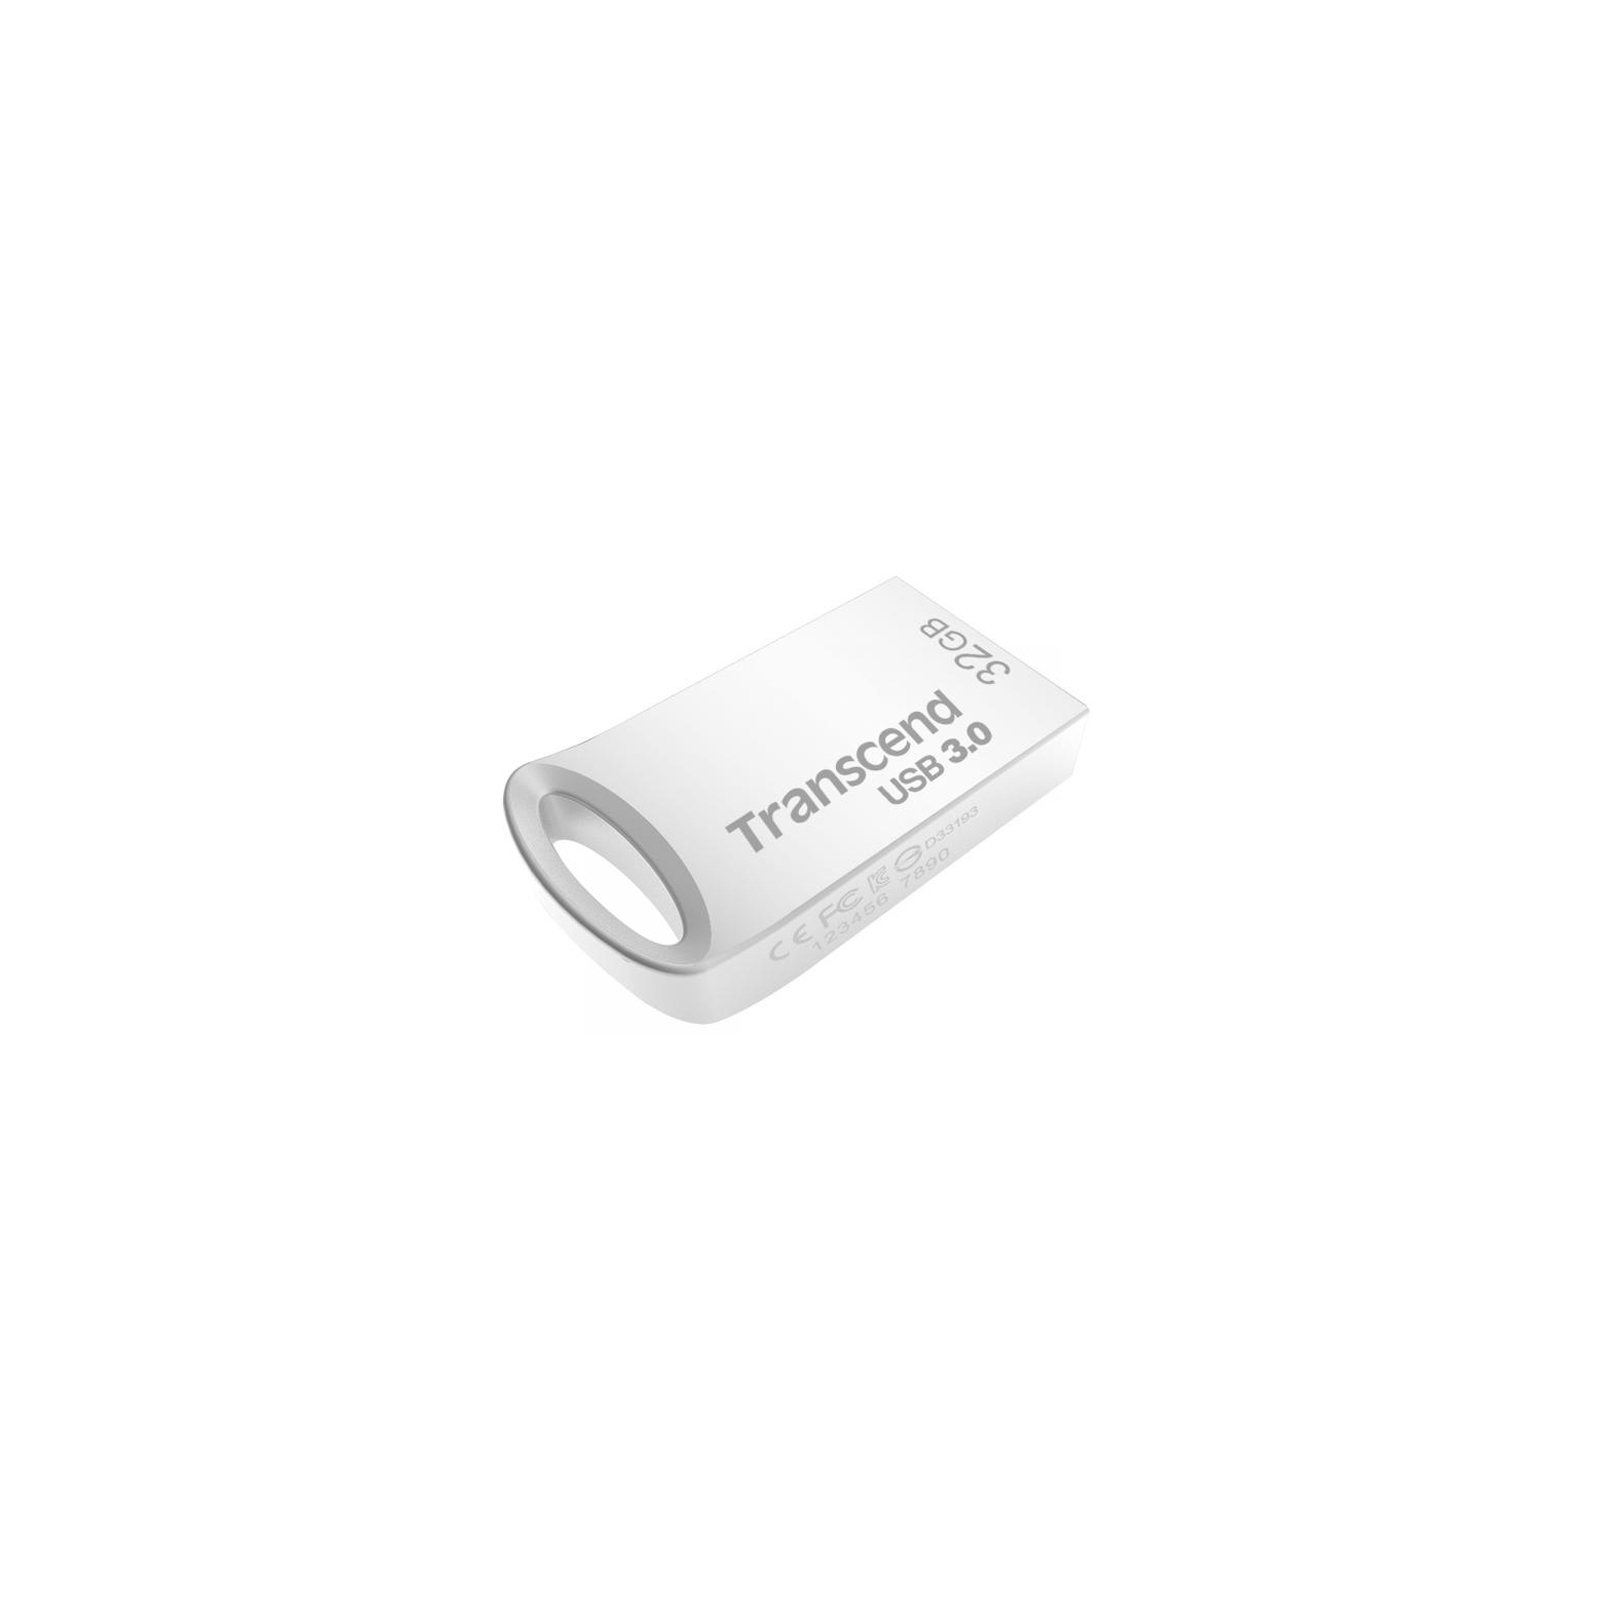 USB флеш накопичувач Transcend 16GB JetFlash 710 Metal Silver USB 3.0 (TS16GJF710S)